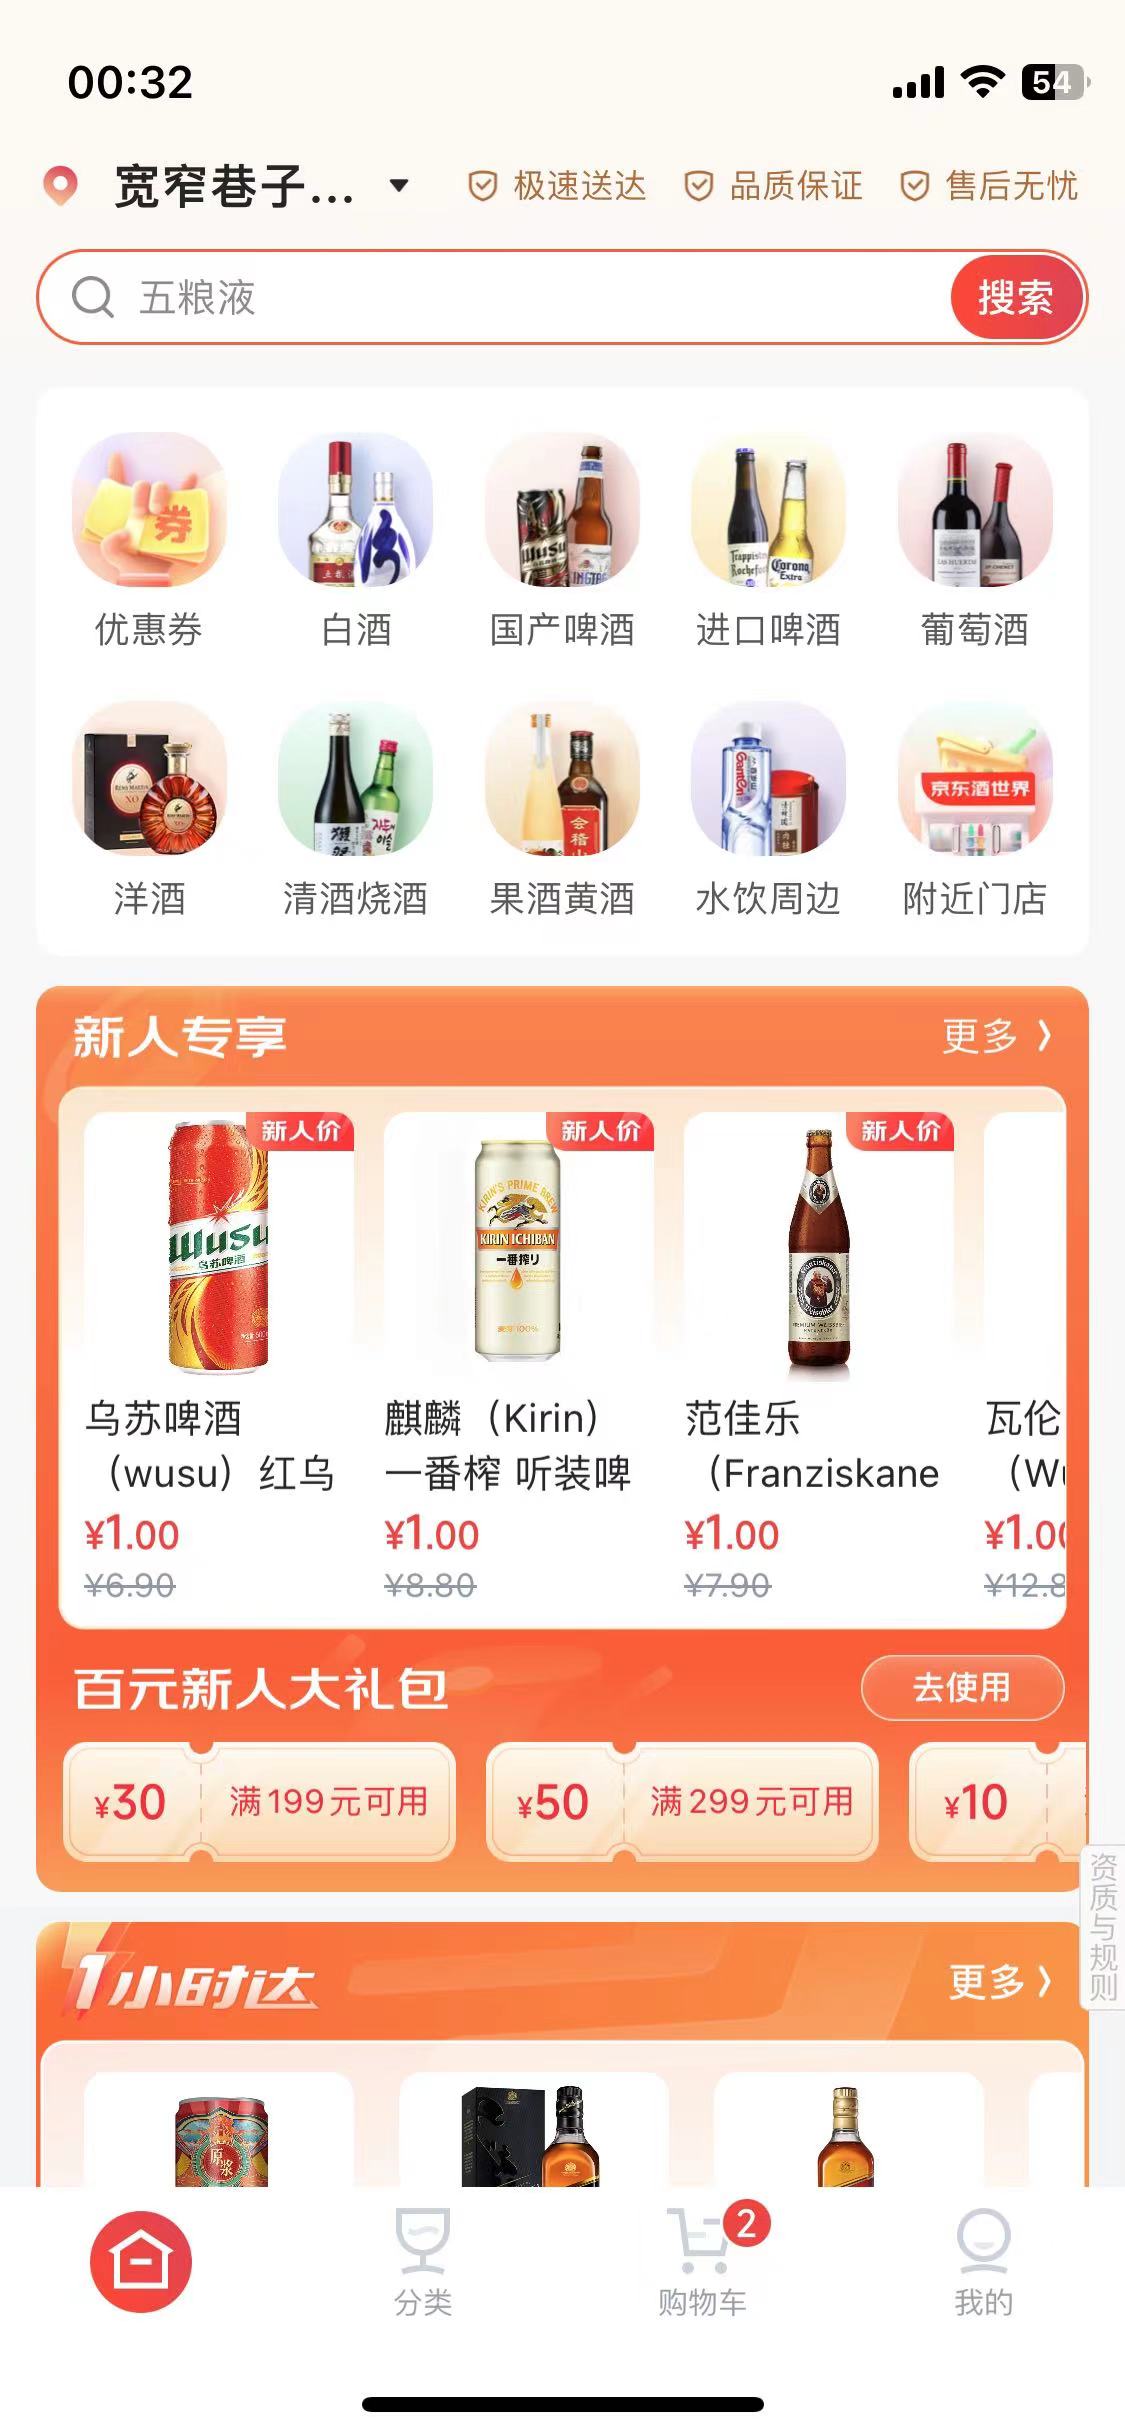 【实物专区】京东酒世界1元撸啤酒_网络实物线报